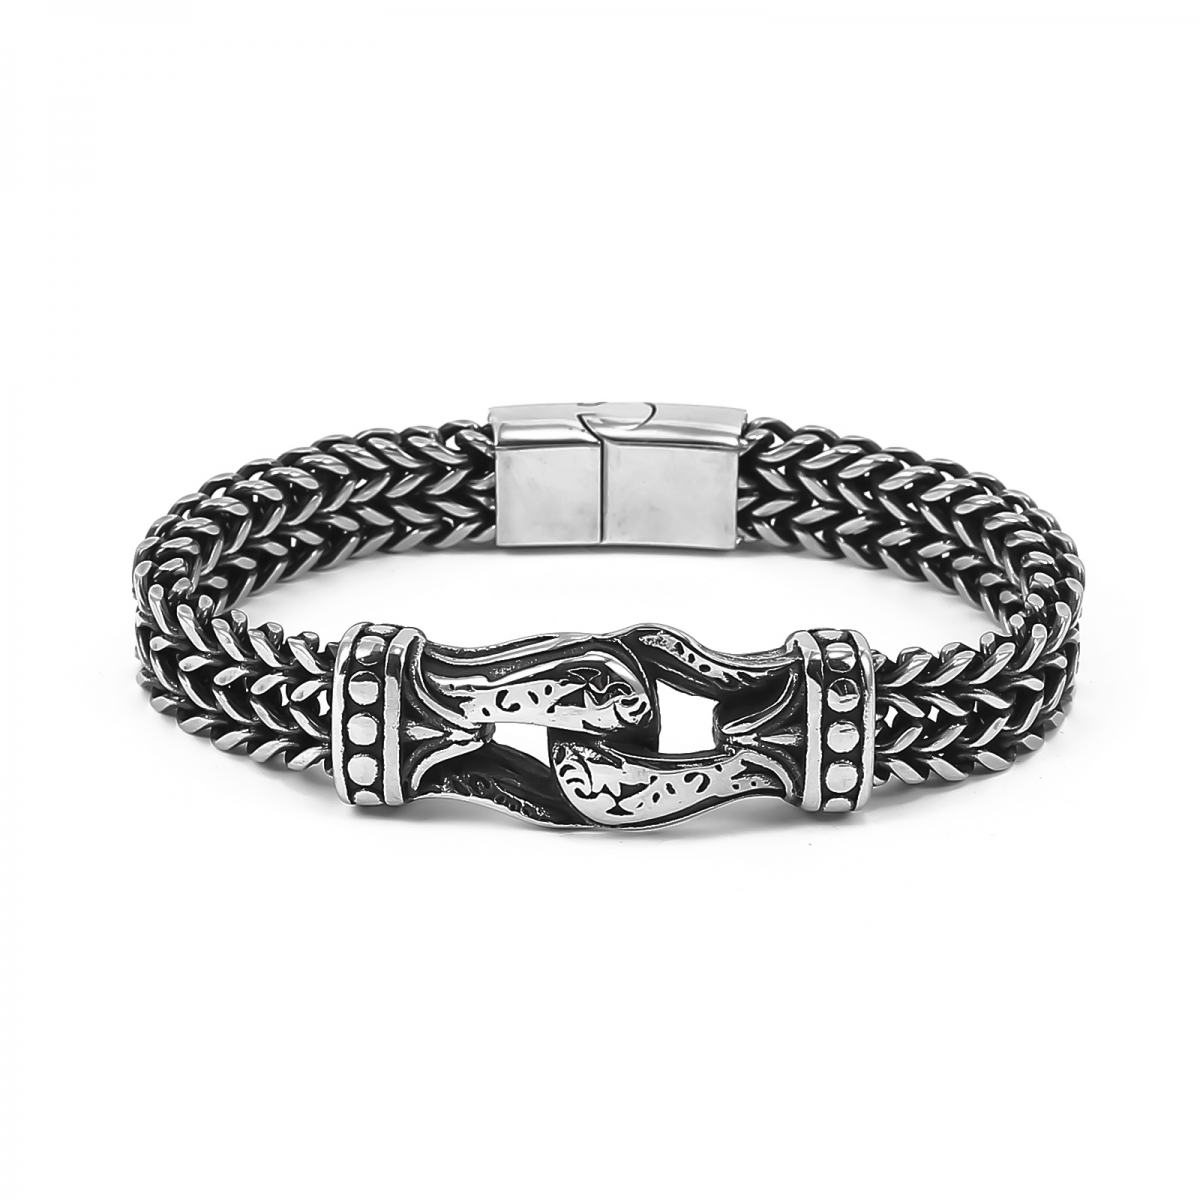 Jarngreipr Bracelet US$5/PC-NORSECOLLECTION- Viking Jewelry,Viking Necklace,Viking Bracelet,Viking Rings,Viking Mugs,Viking Accessories,Viking Crafts